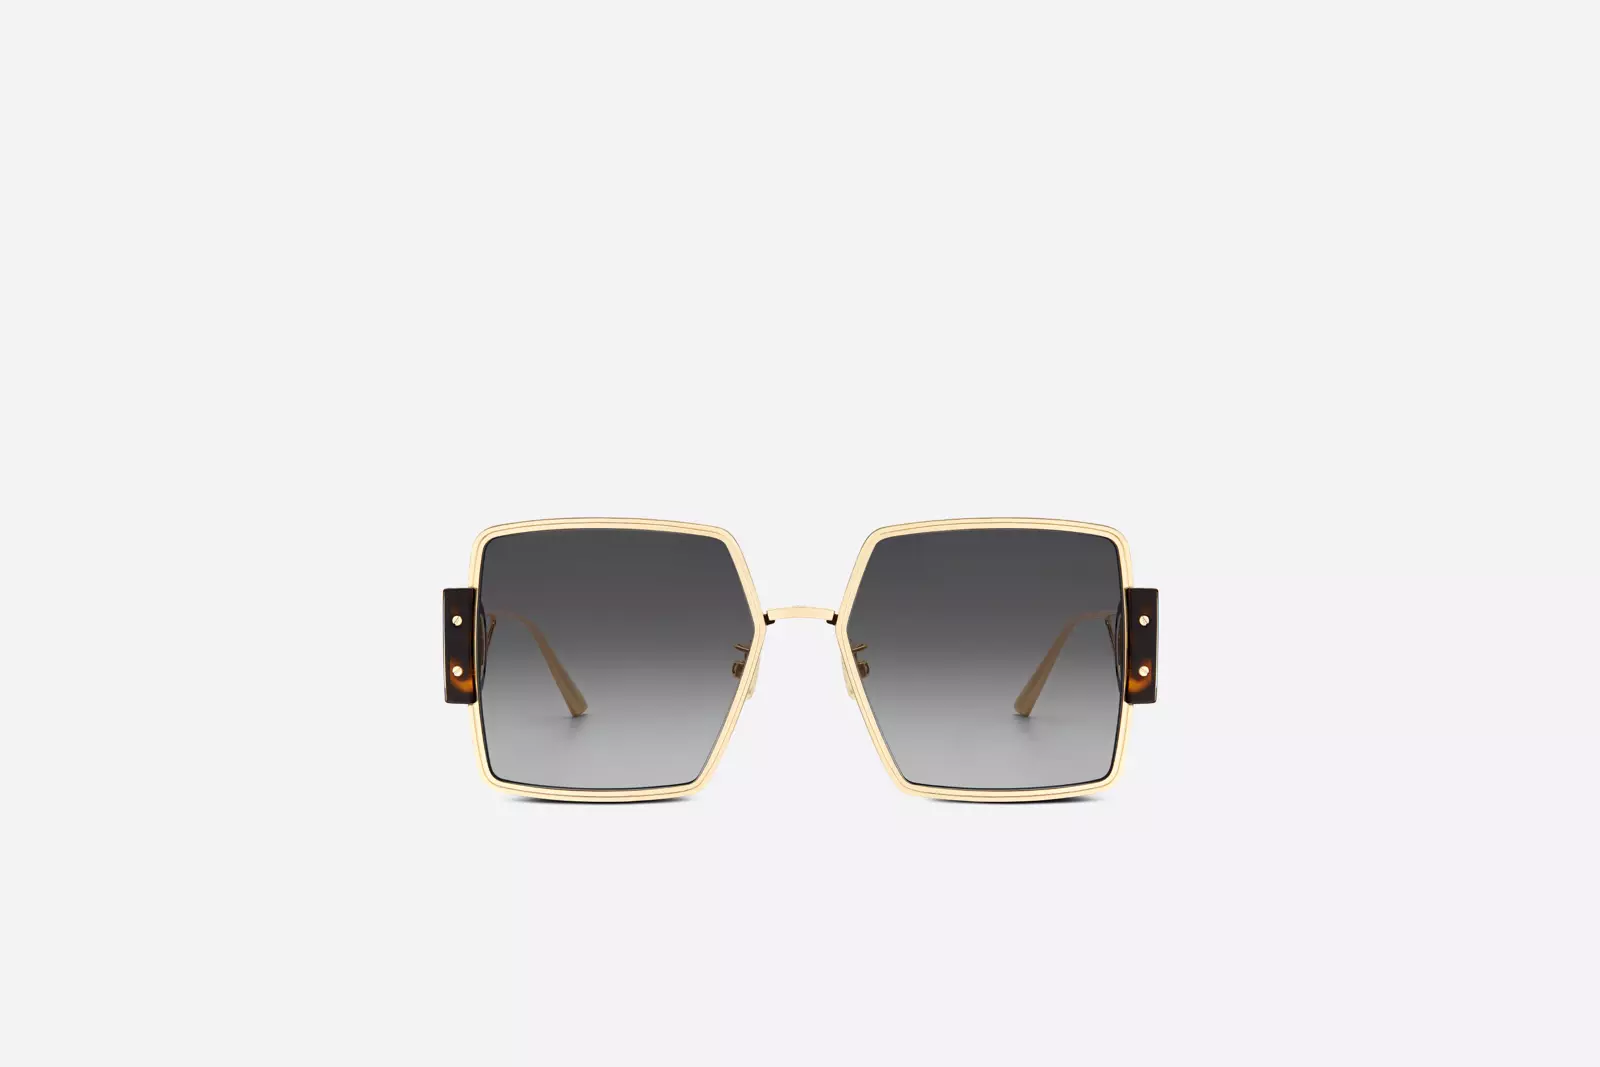 Sunglasses Christian Dior 2250 Rihanna Sunglasses Leather